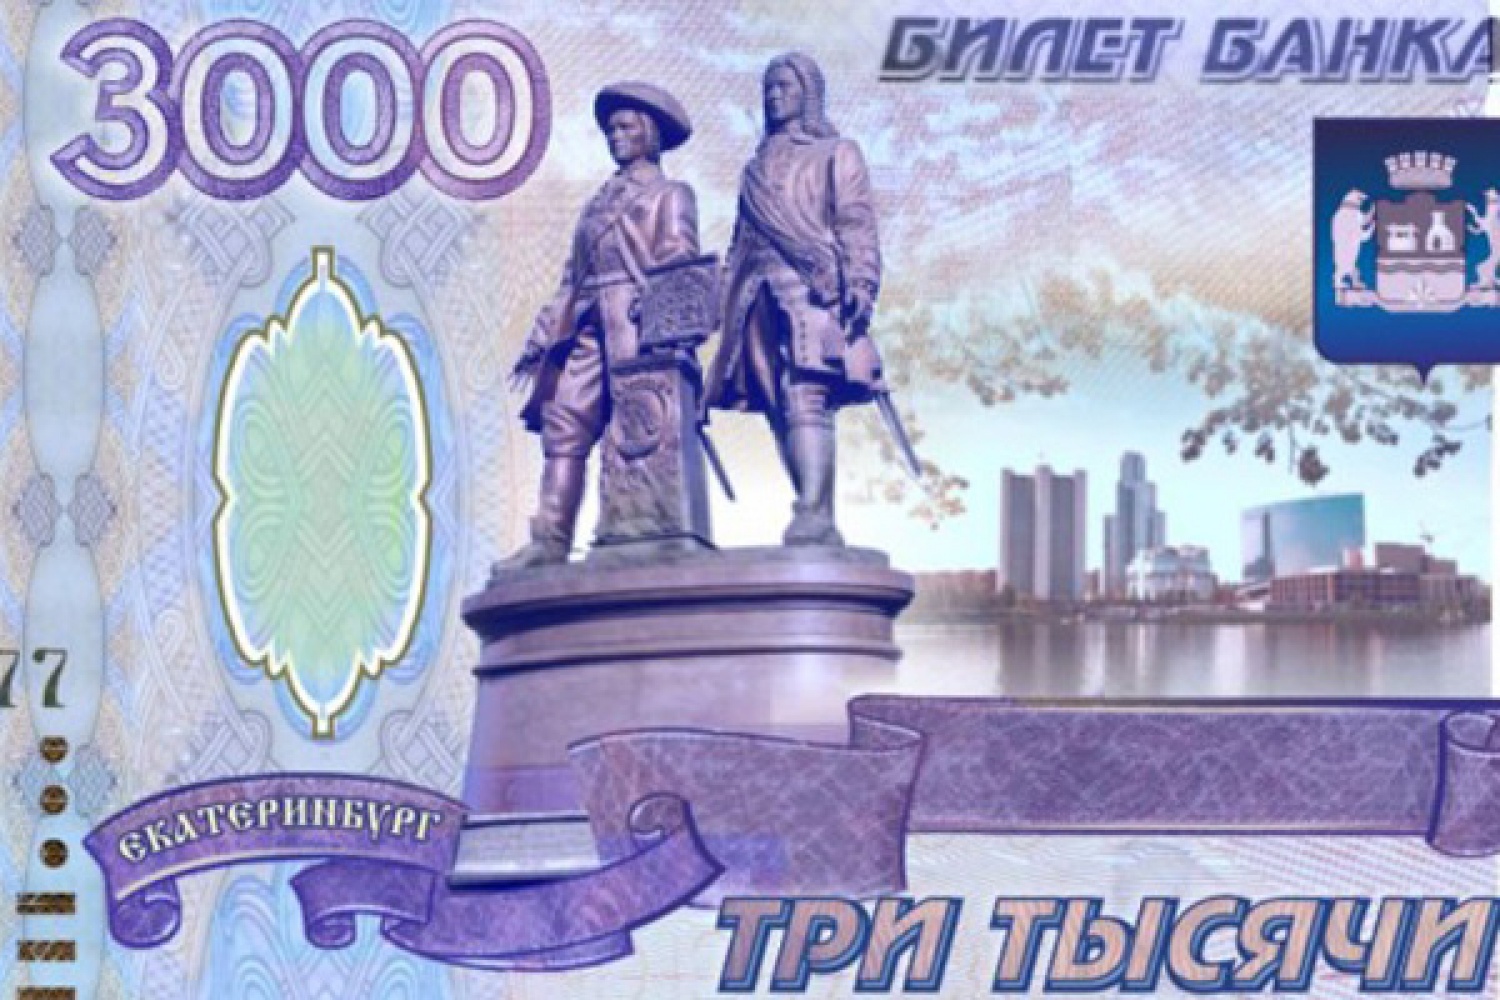 3000 рублей должны